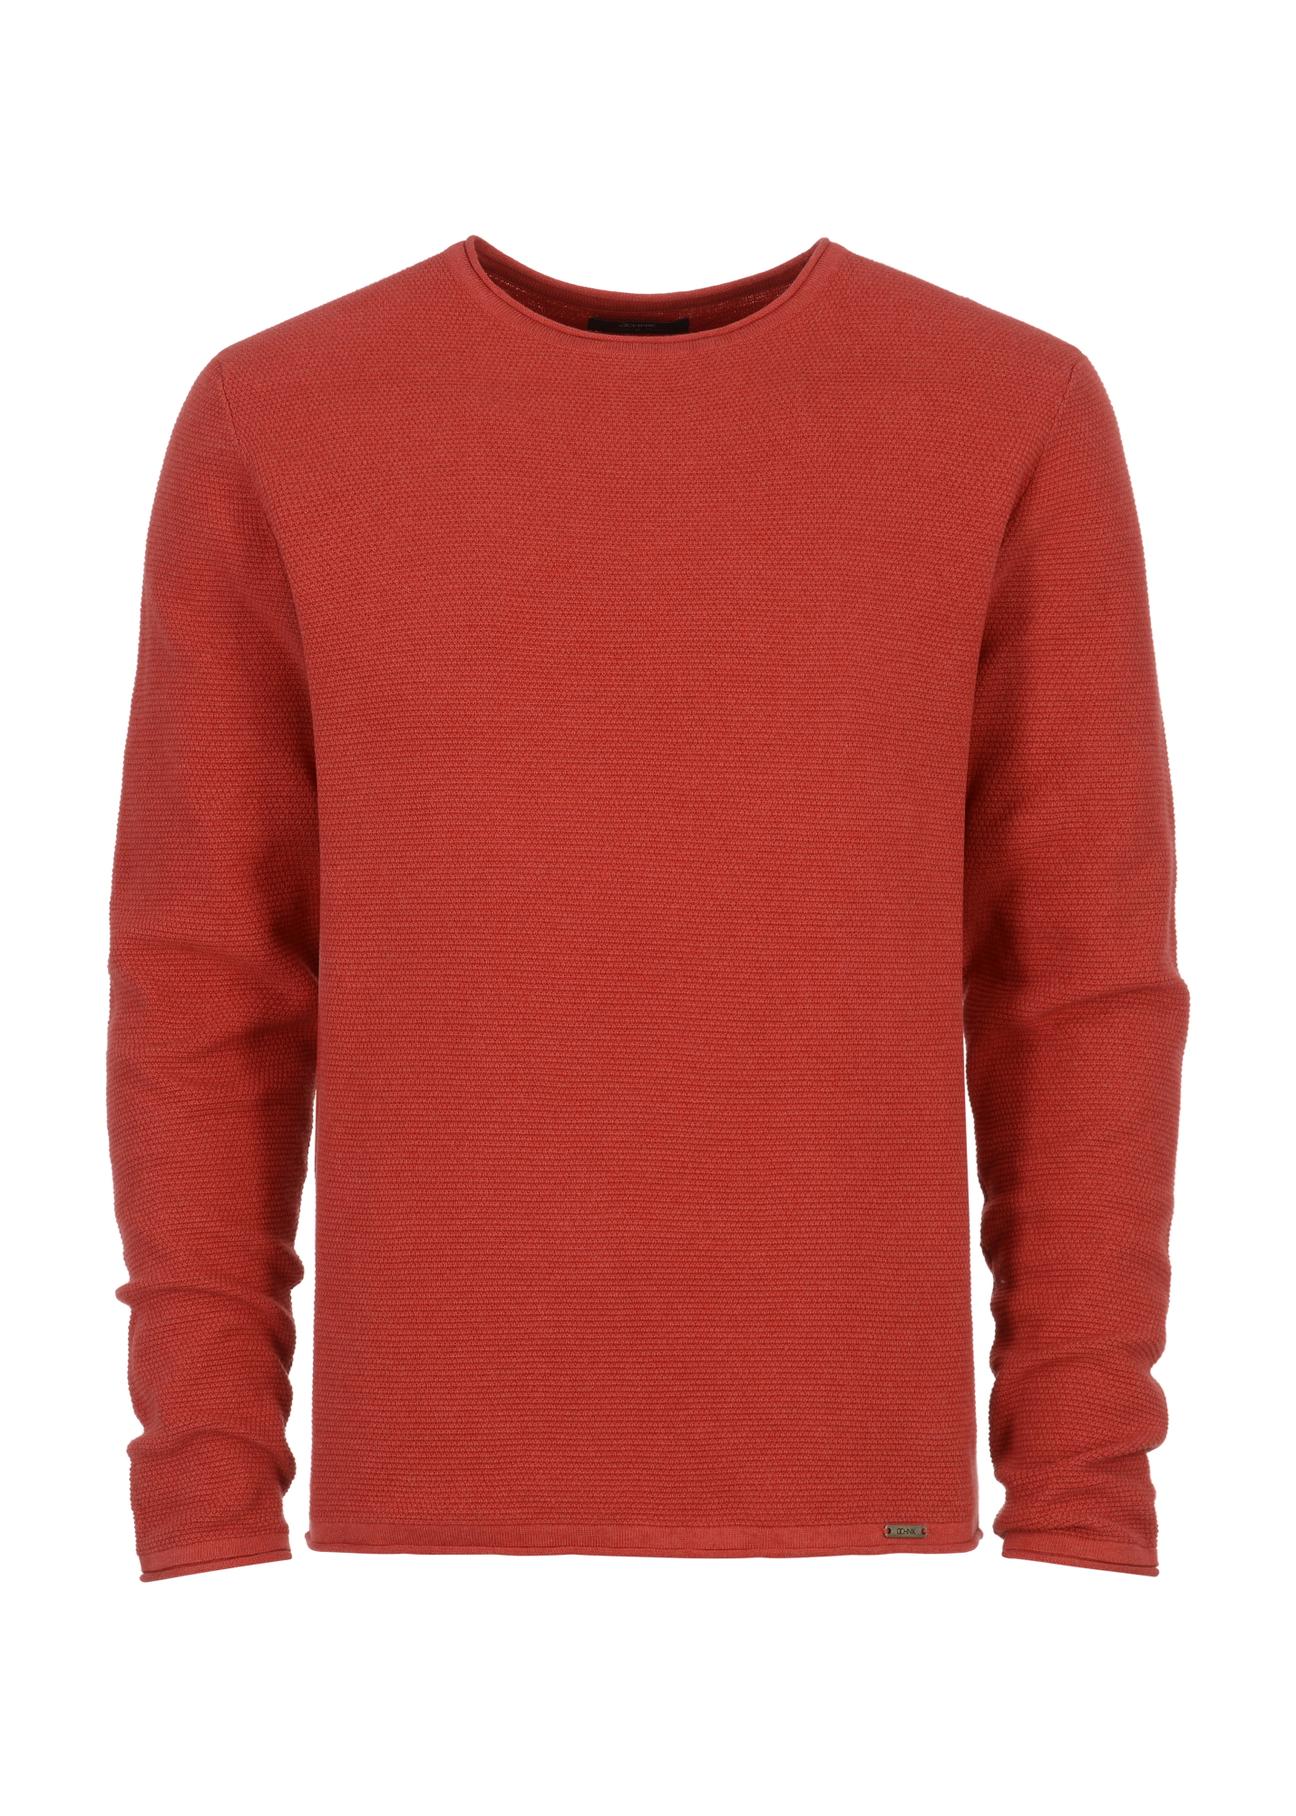 Czerwony sweter męski basic SWEMT-0128-41(W23)